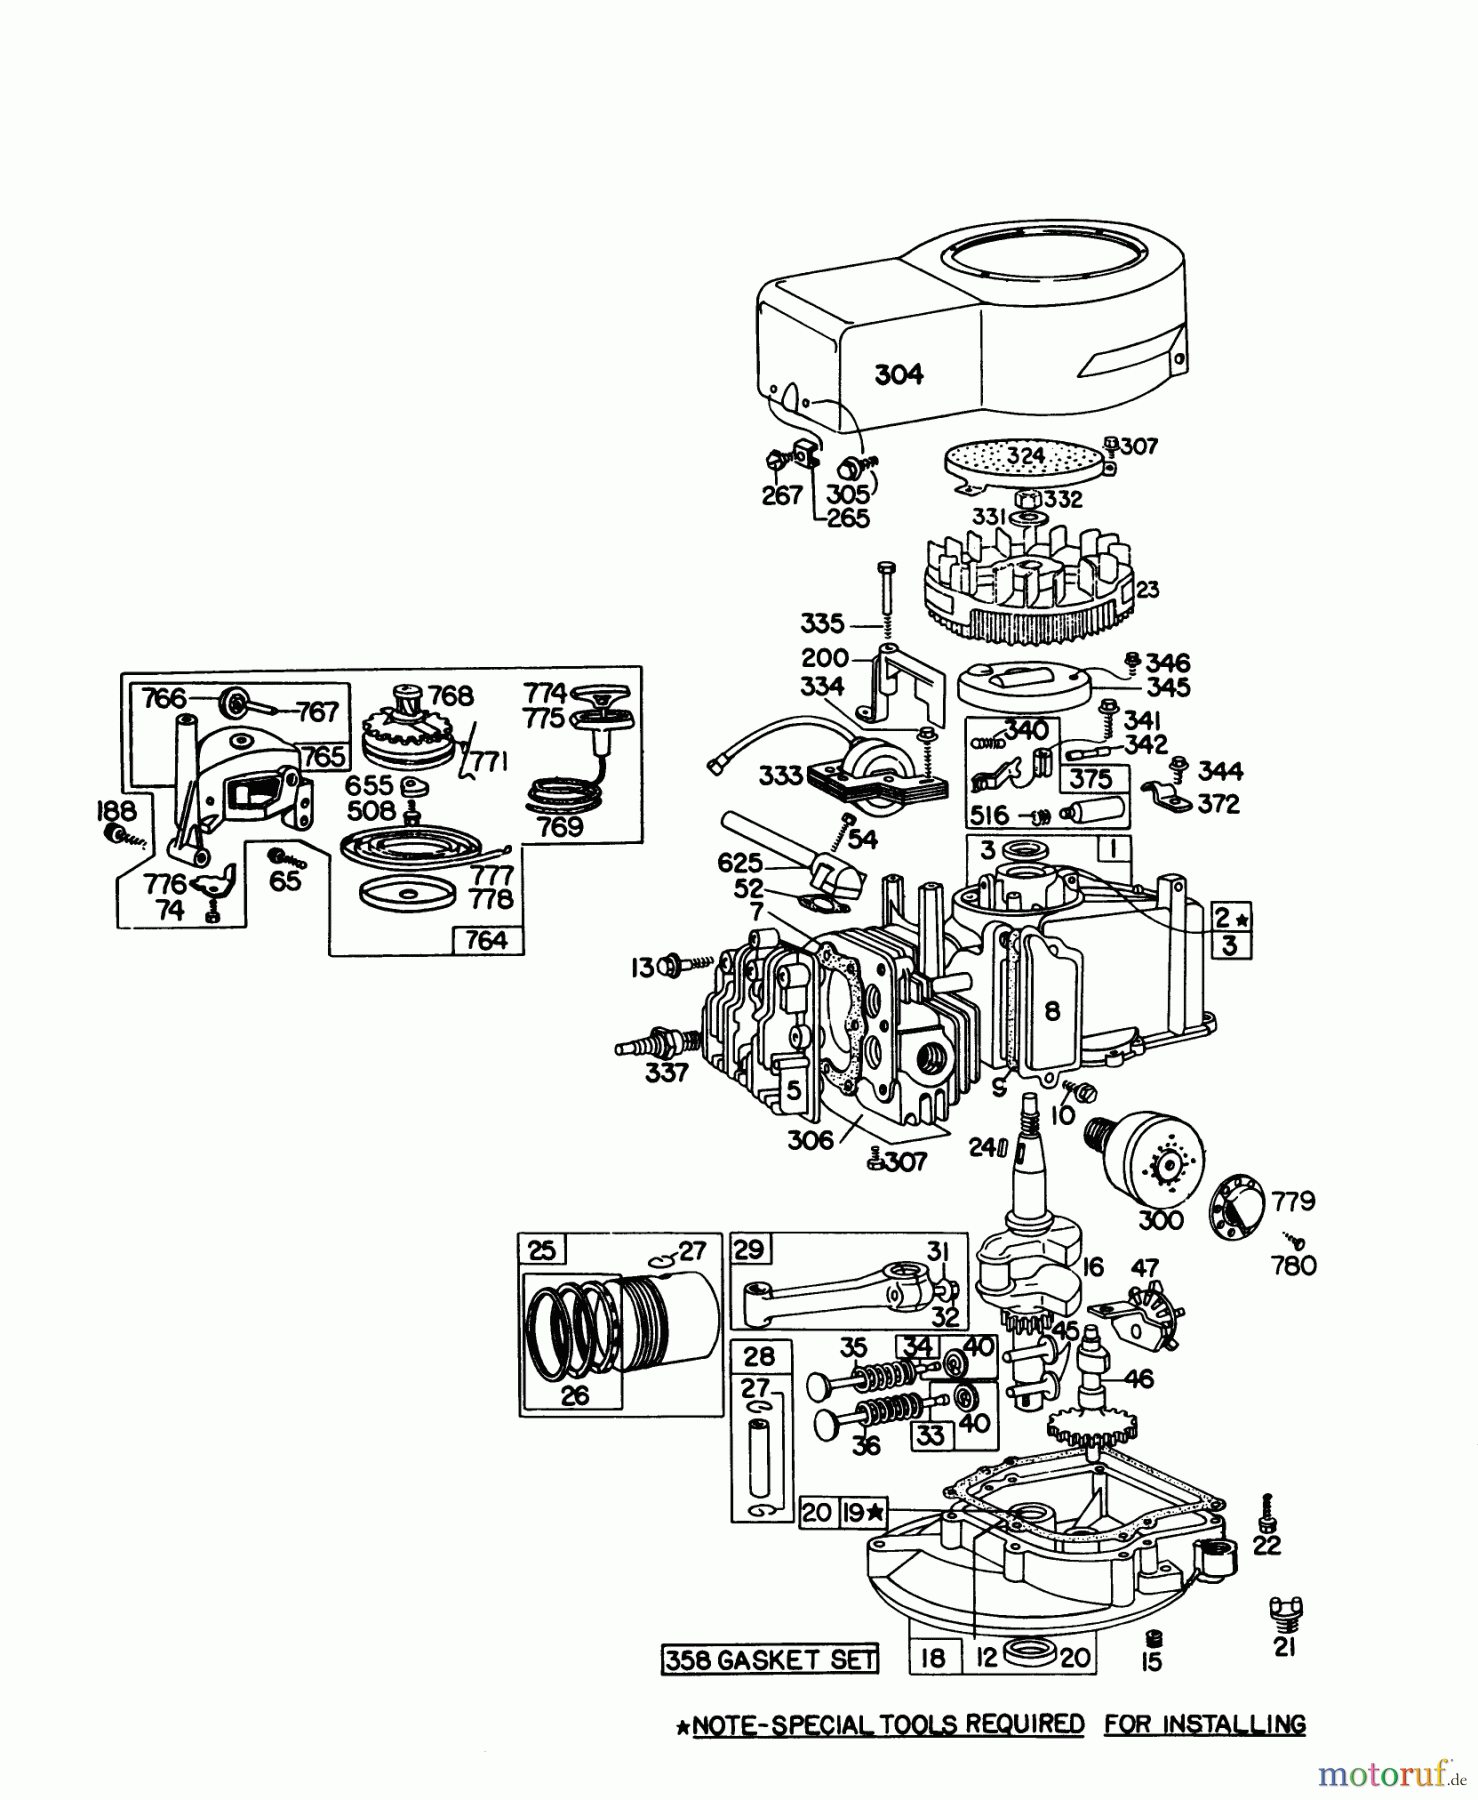  Toro Neu Mowers, Walk-Behind Seite 1 16067 - Toro Whirlwind II Lawnmower, 1978 (8000001-8999999) ENGINE BRIGGS & STRATTON MODEL 92908-1931-01 FOR 21